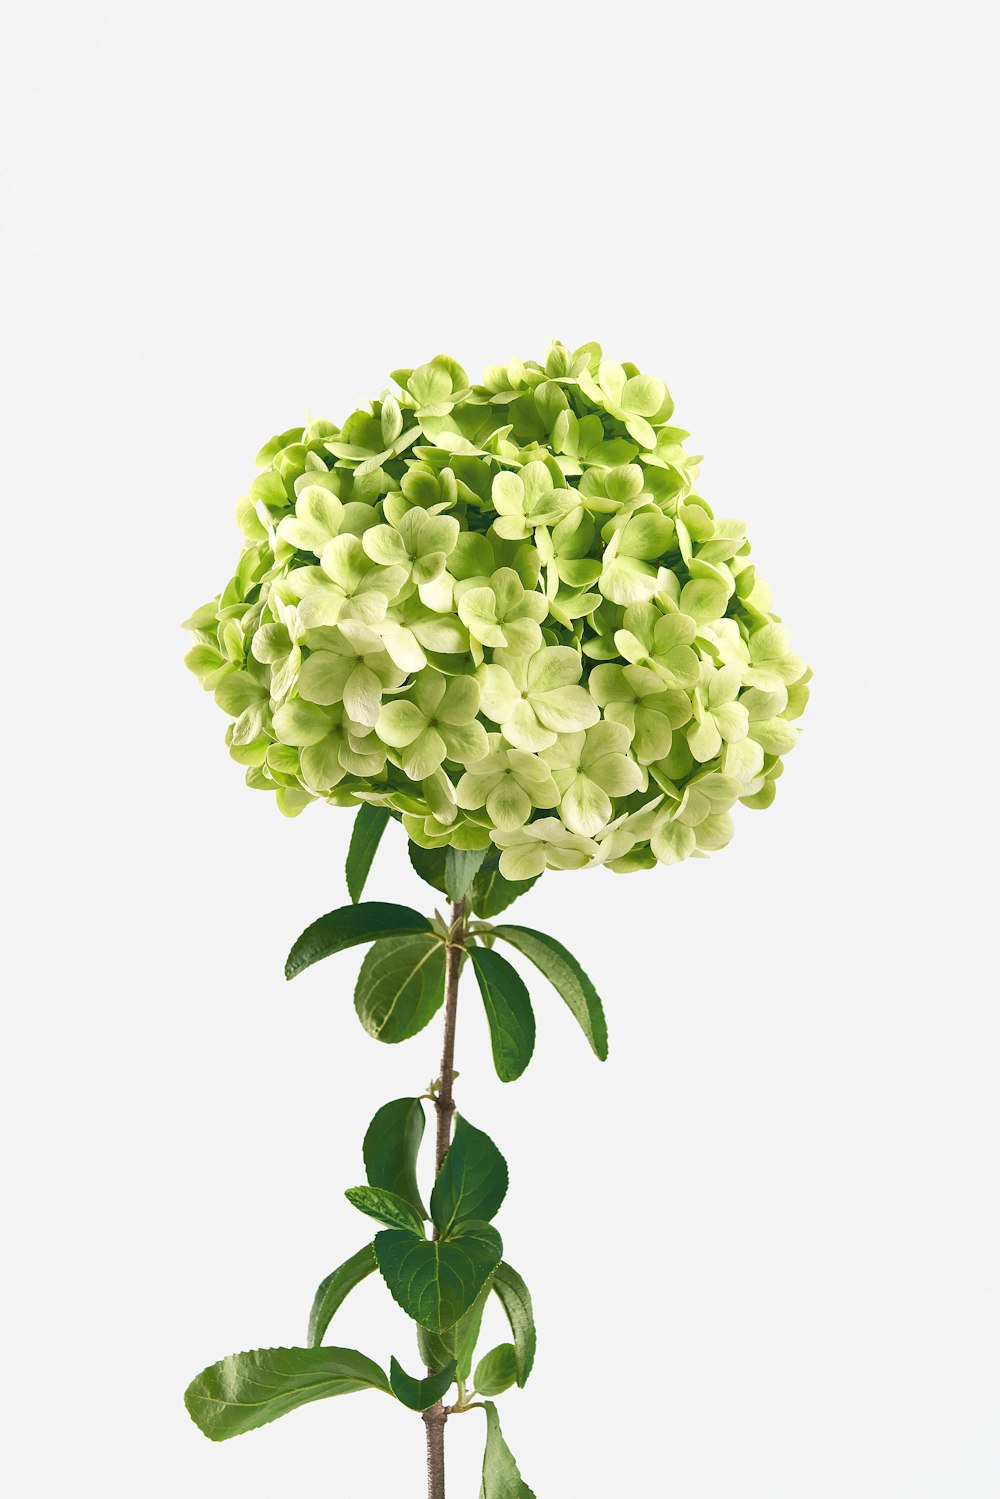 green hydrangea flowers